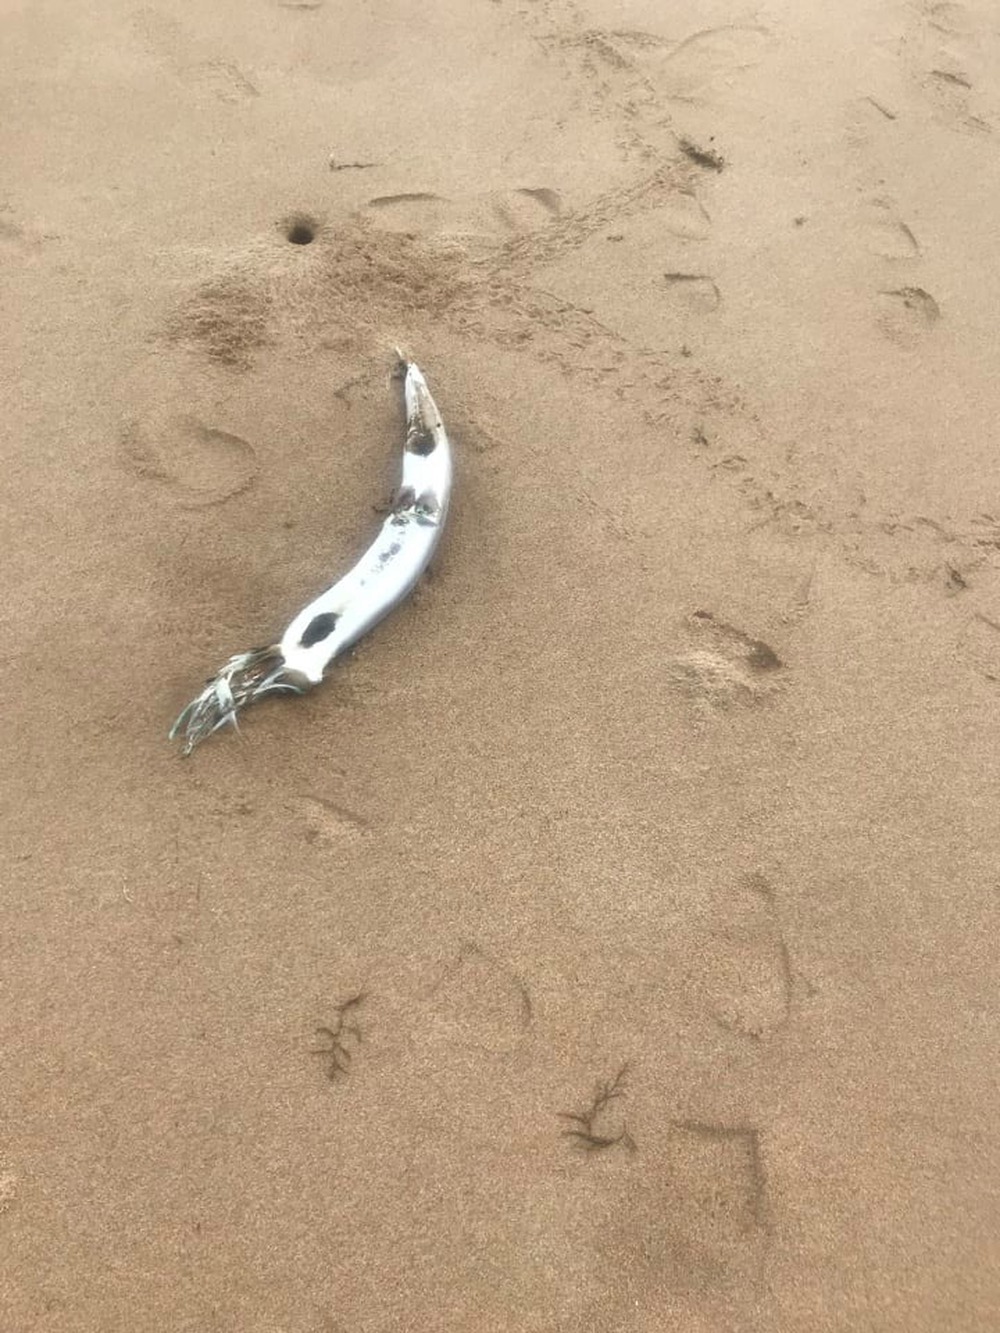 Cá chết bất thường dọc bãi biển 2 xã ở Nghệ An, lấy mẫu nước biển quan trắc - Ảnh 6.